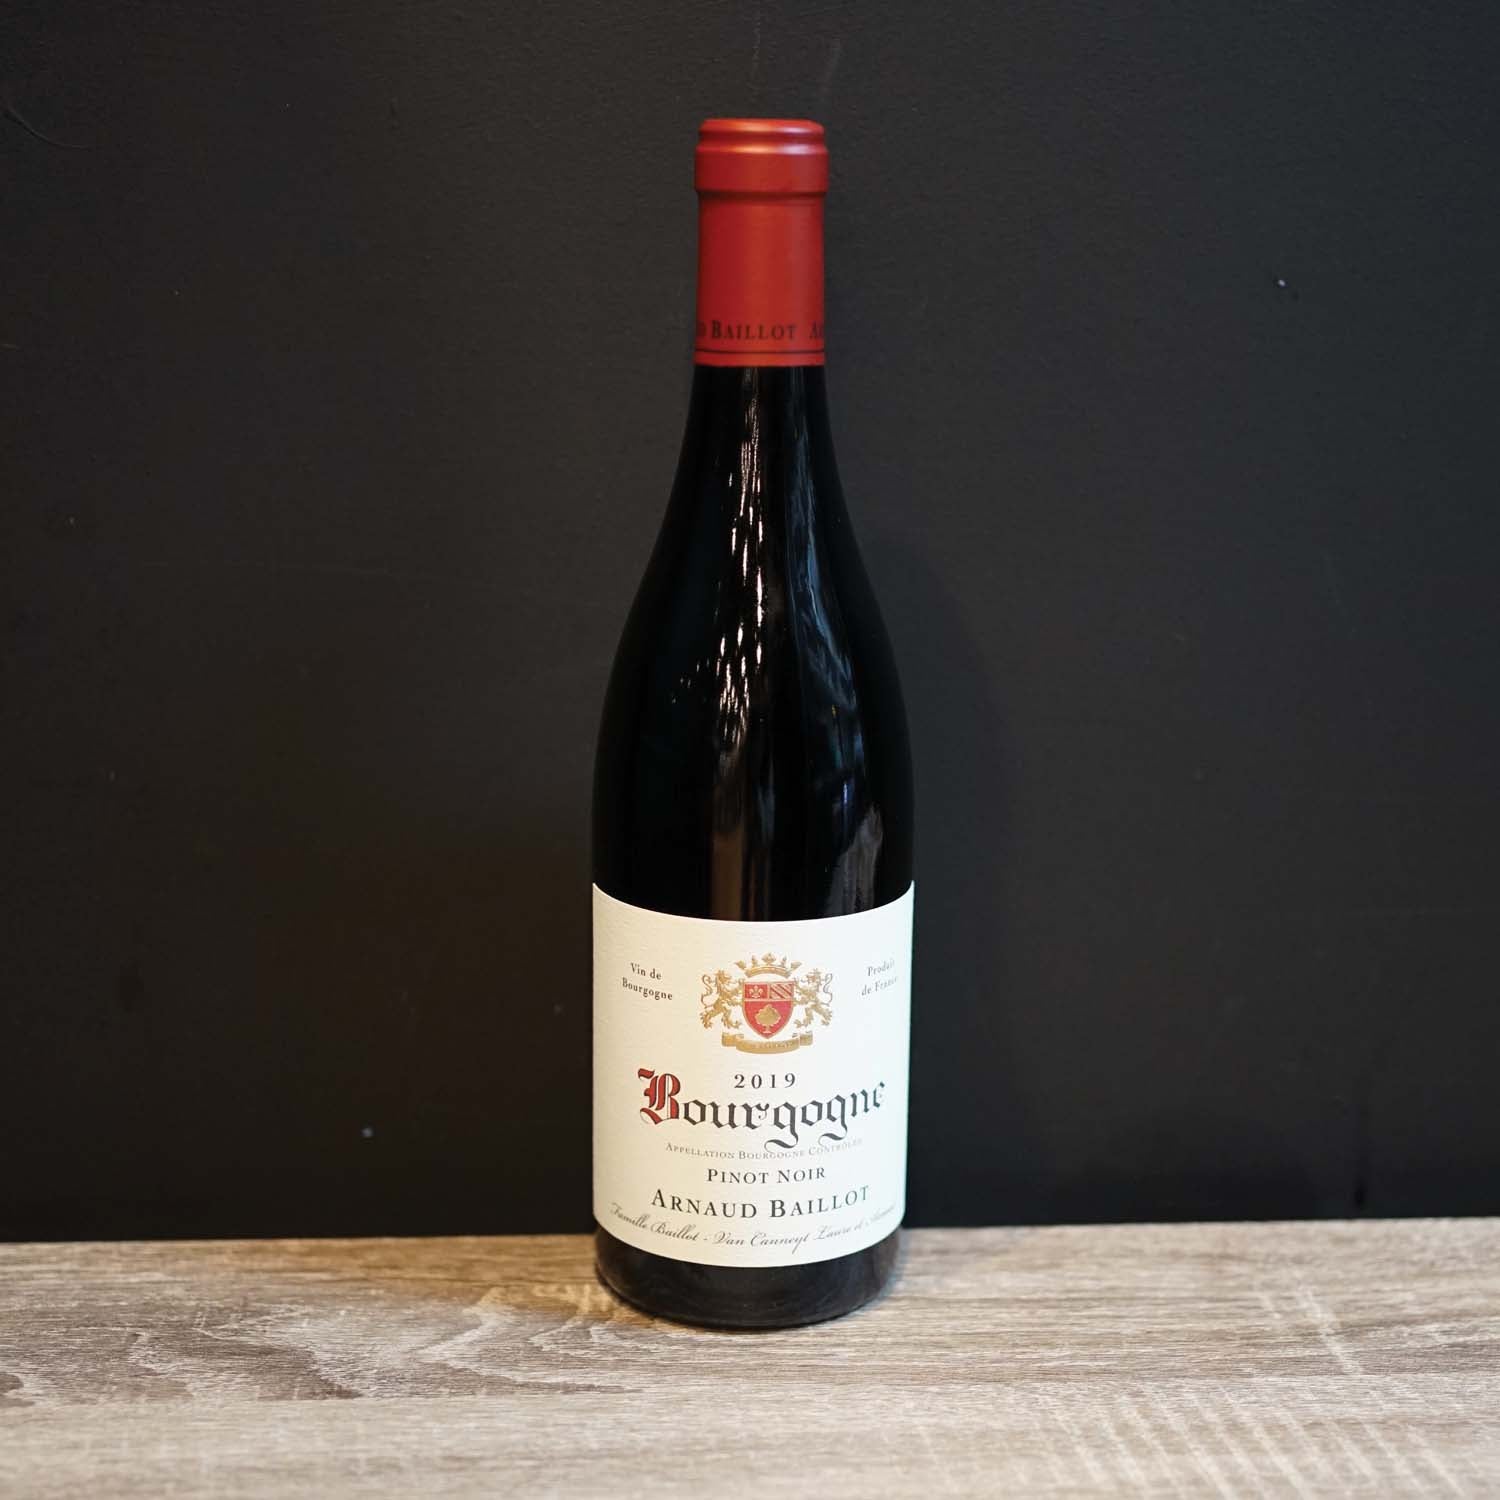 Arnaud Baillot Bourgogne Pinot Noir 2018